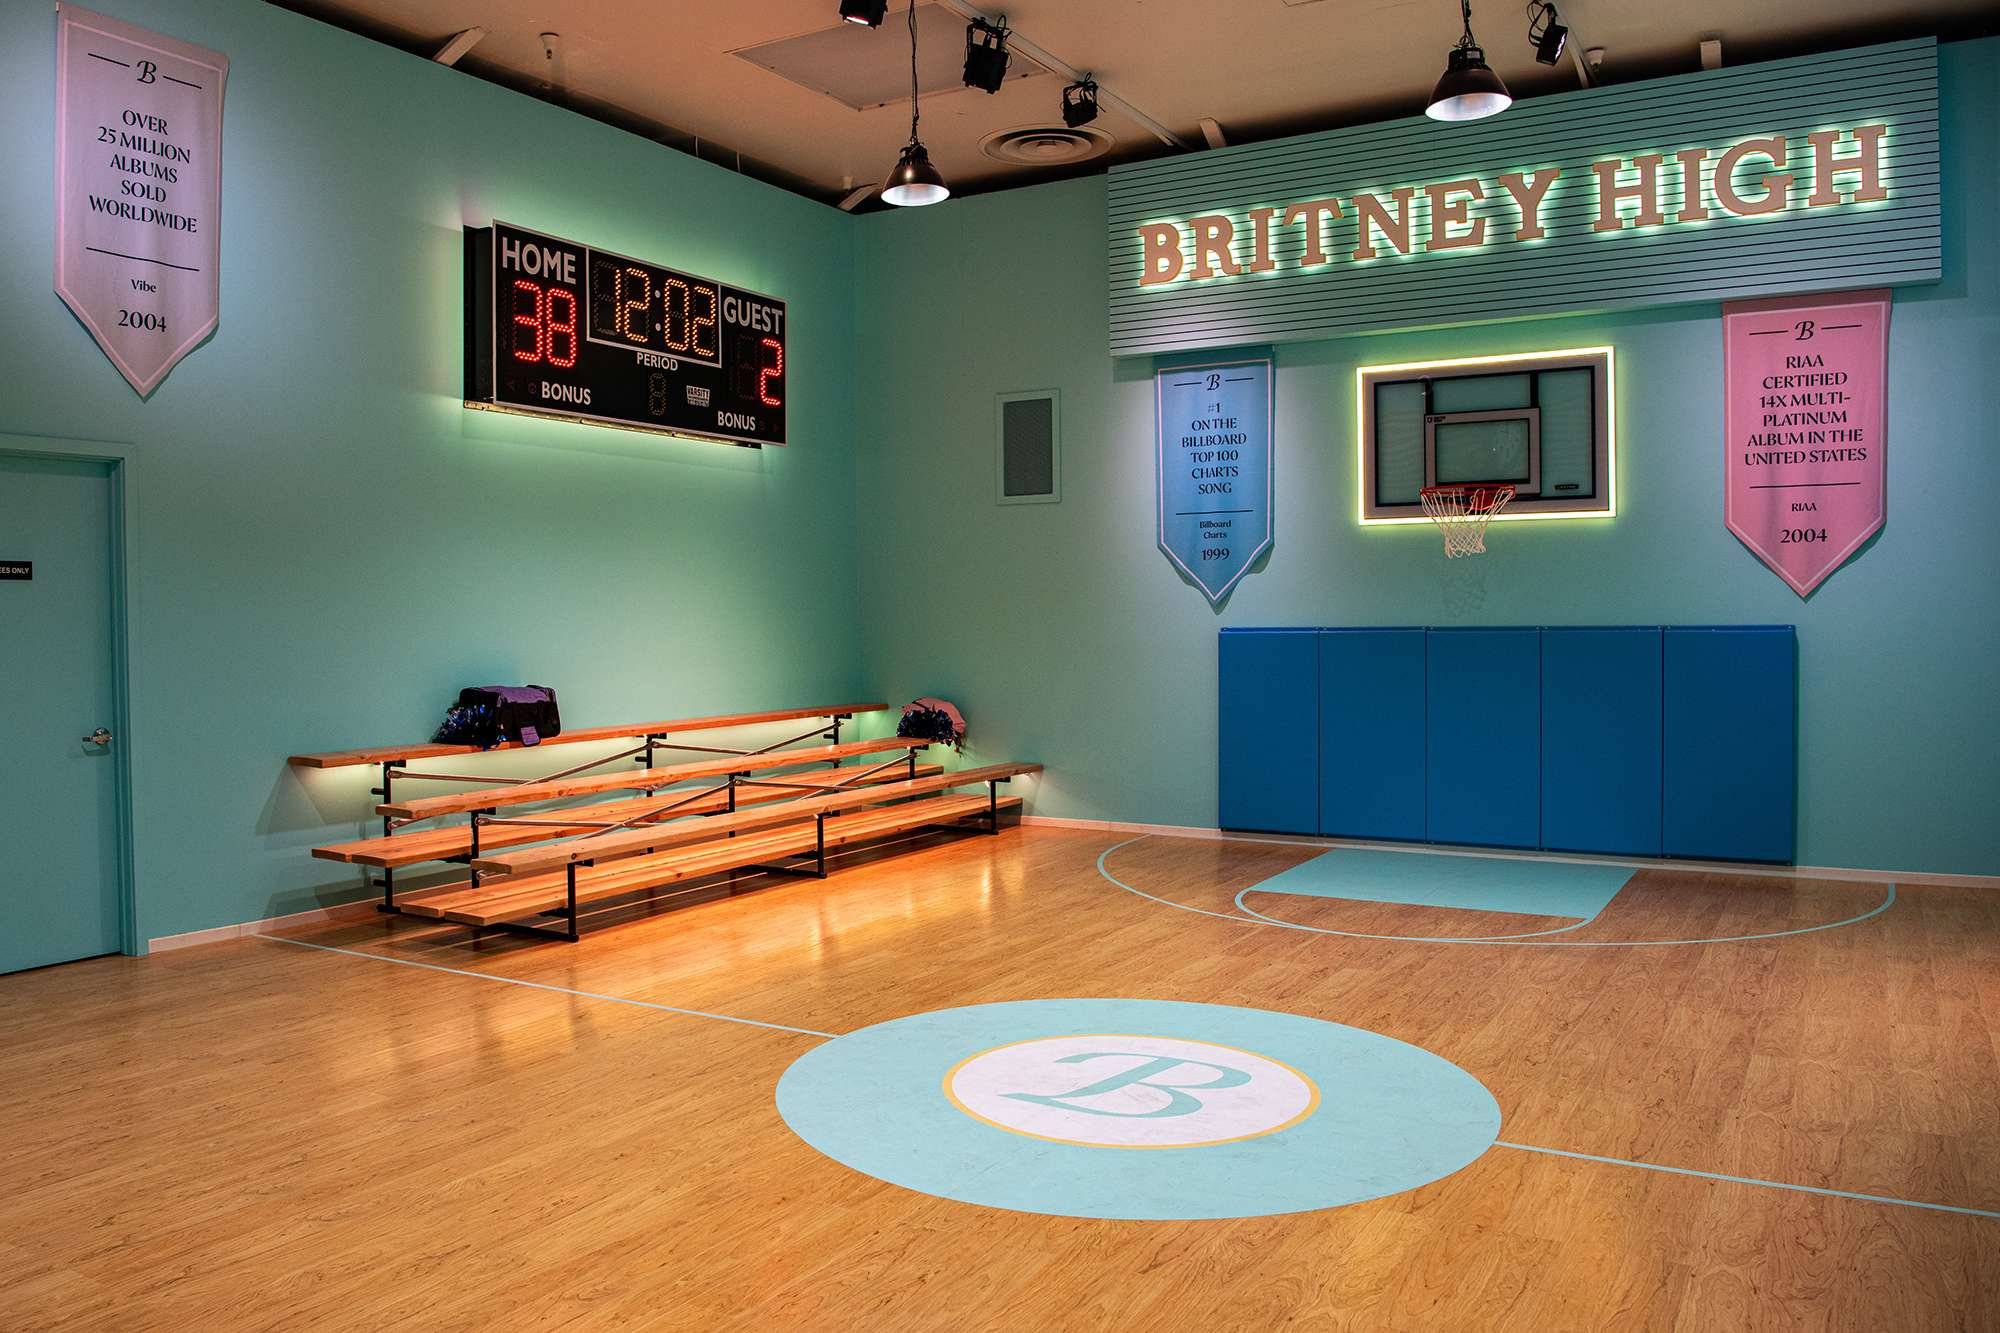 В США открыли магазин, посвященный карьере Бритни Спирс, и вот как он выглядит - фото 466086